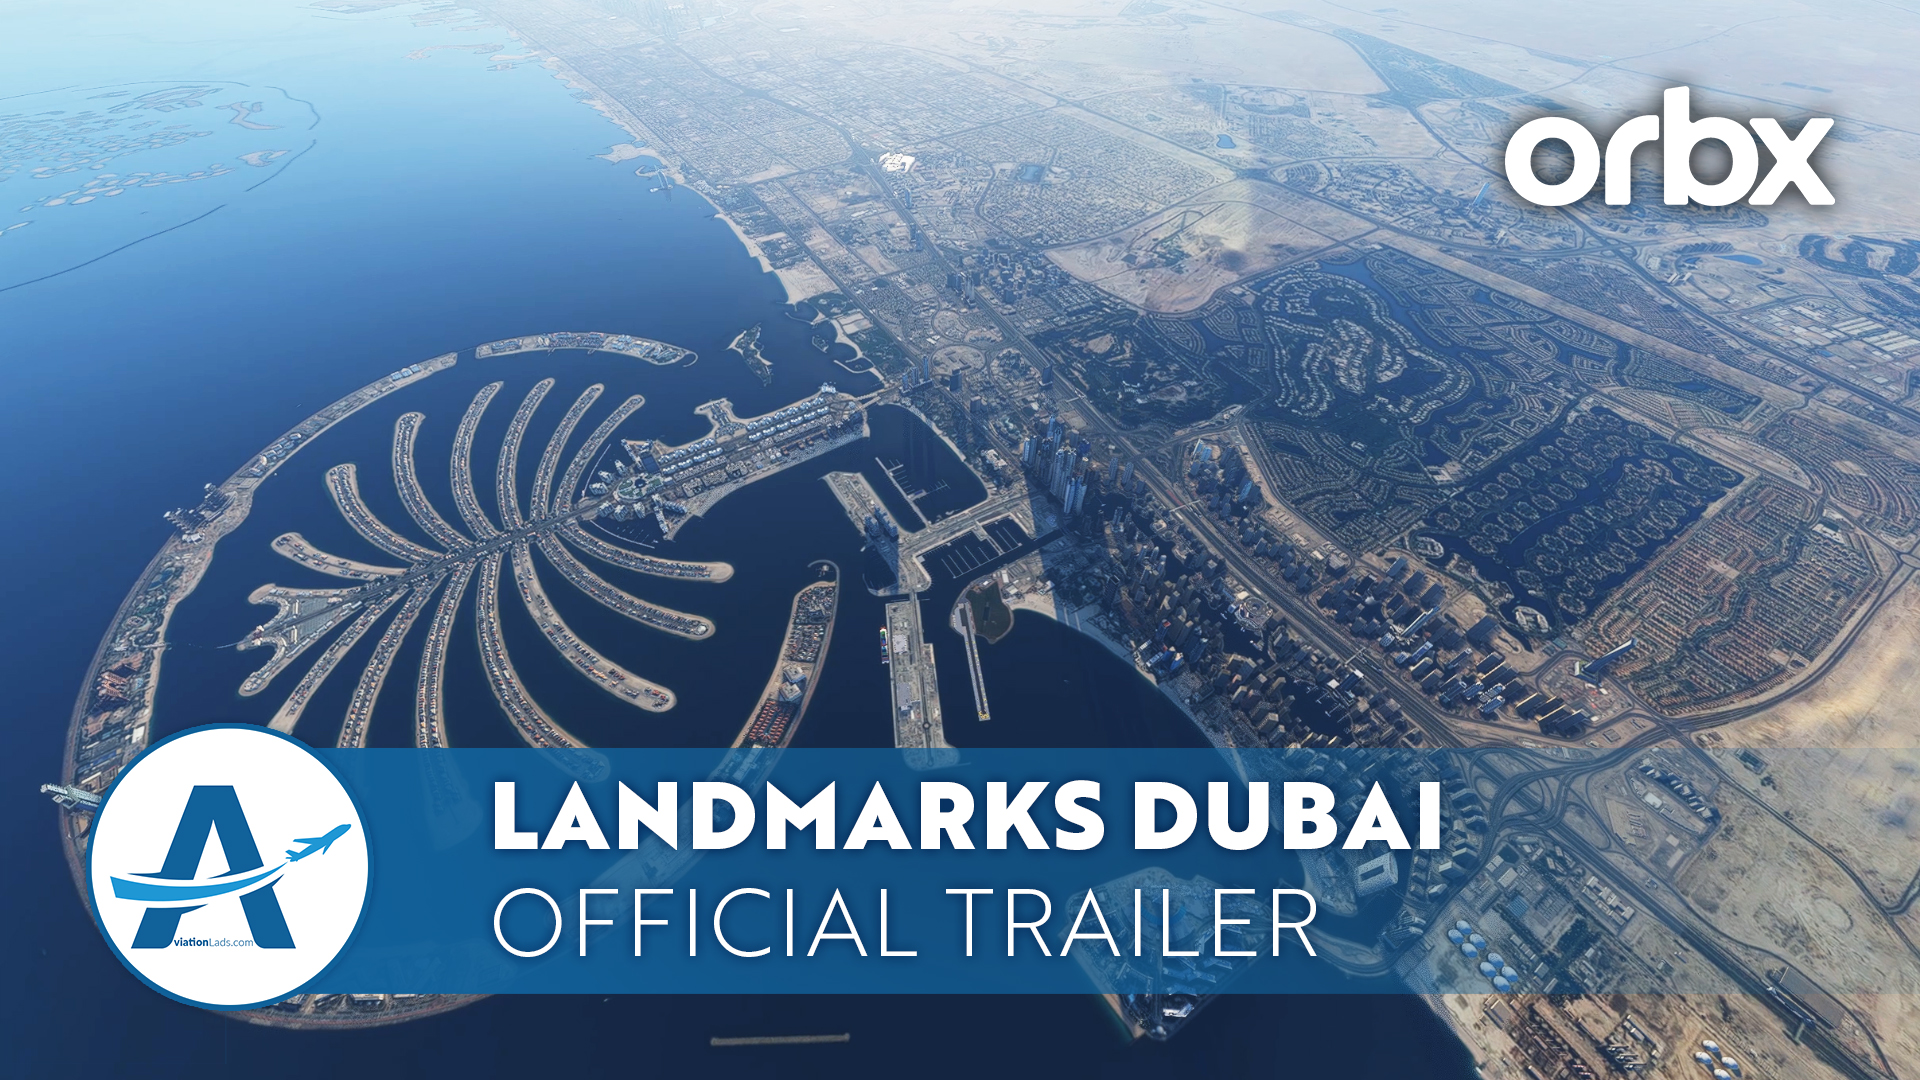 [TRAILER] Orbx Landmarks Dubai